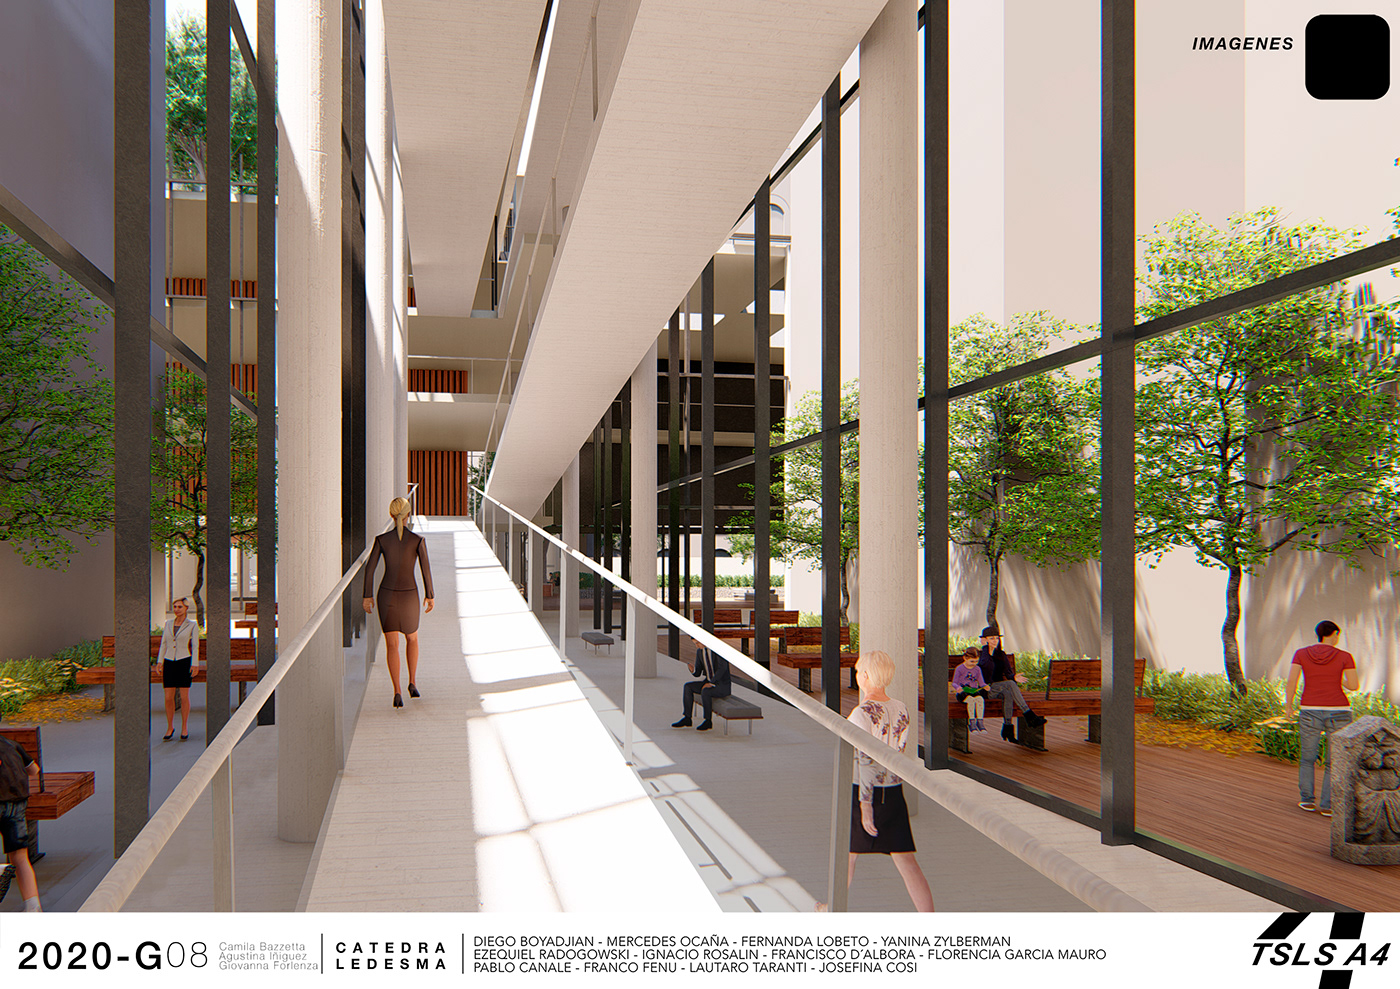 arquitectura biblioteca buenos aires centro cultural espacios verdes exposiciones fadu pasajes Terrazas torre